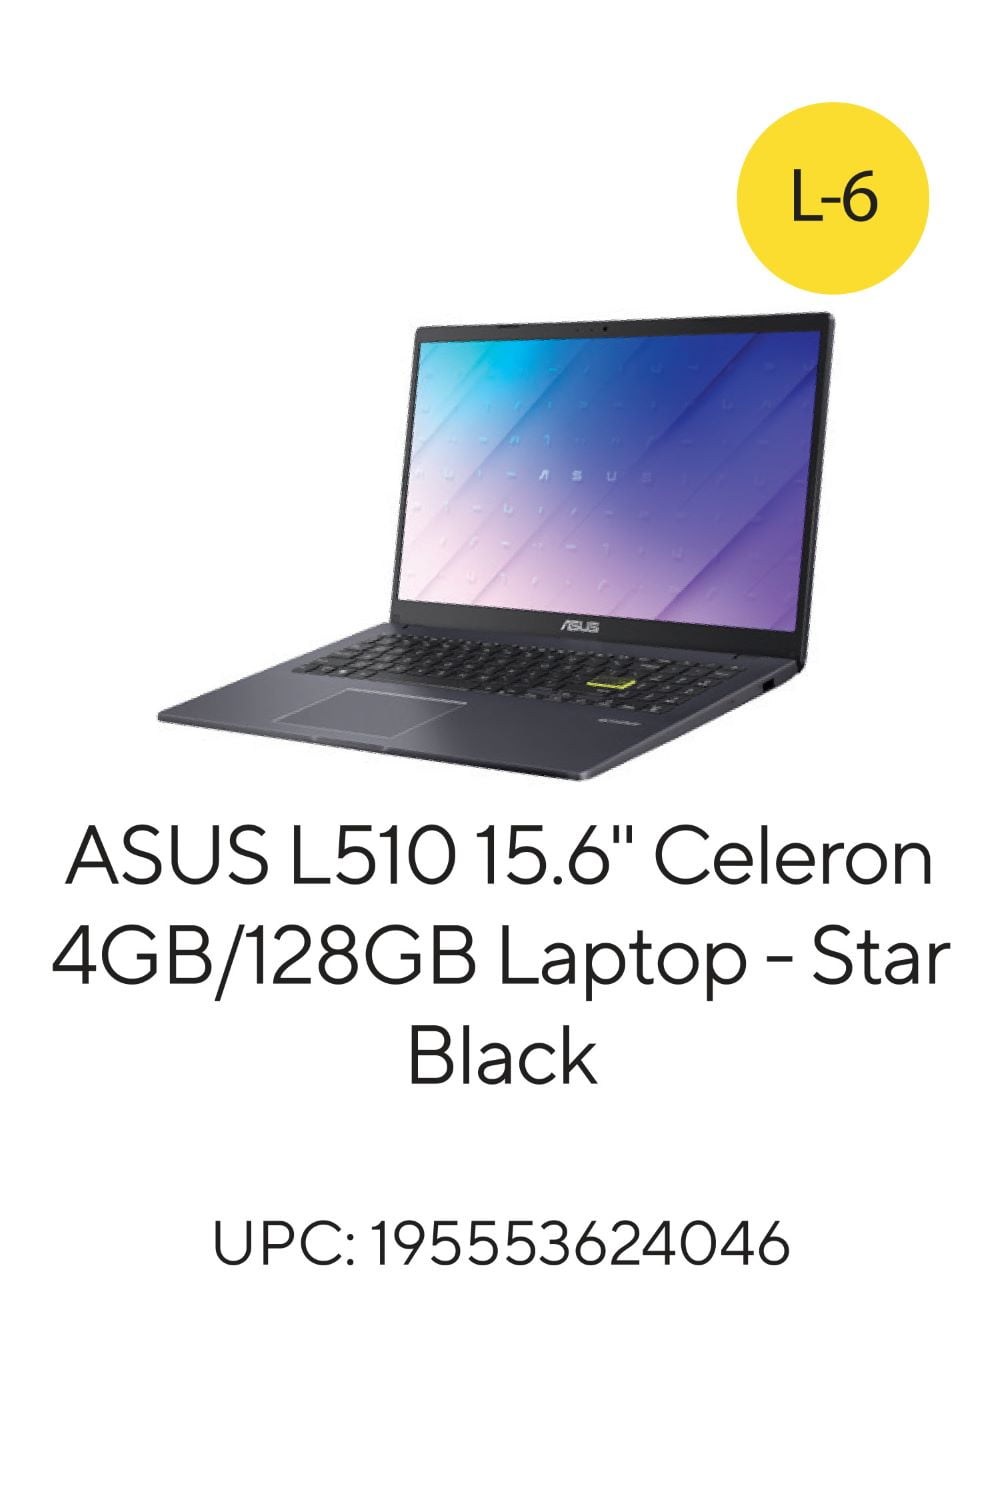 ASUS 15.6 FHD Laptop, Intel Pentium, 4GB RAM, 128GB eMMC, Windows